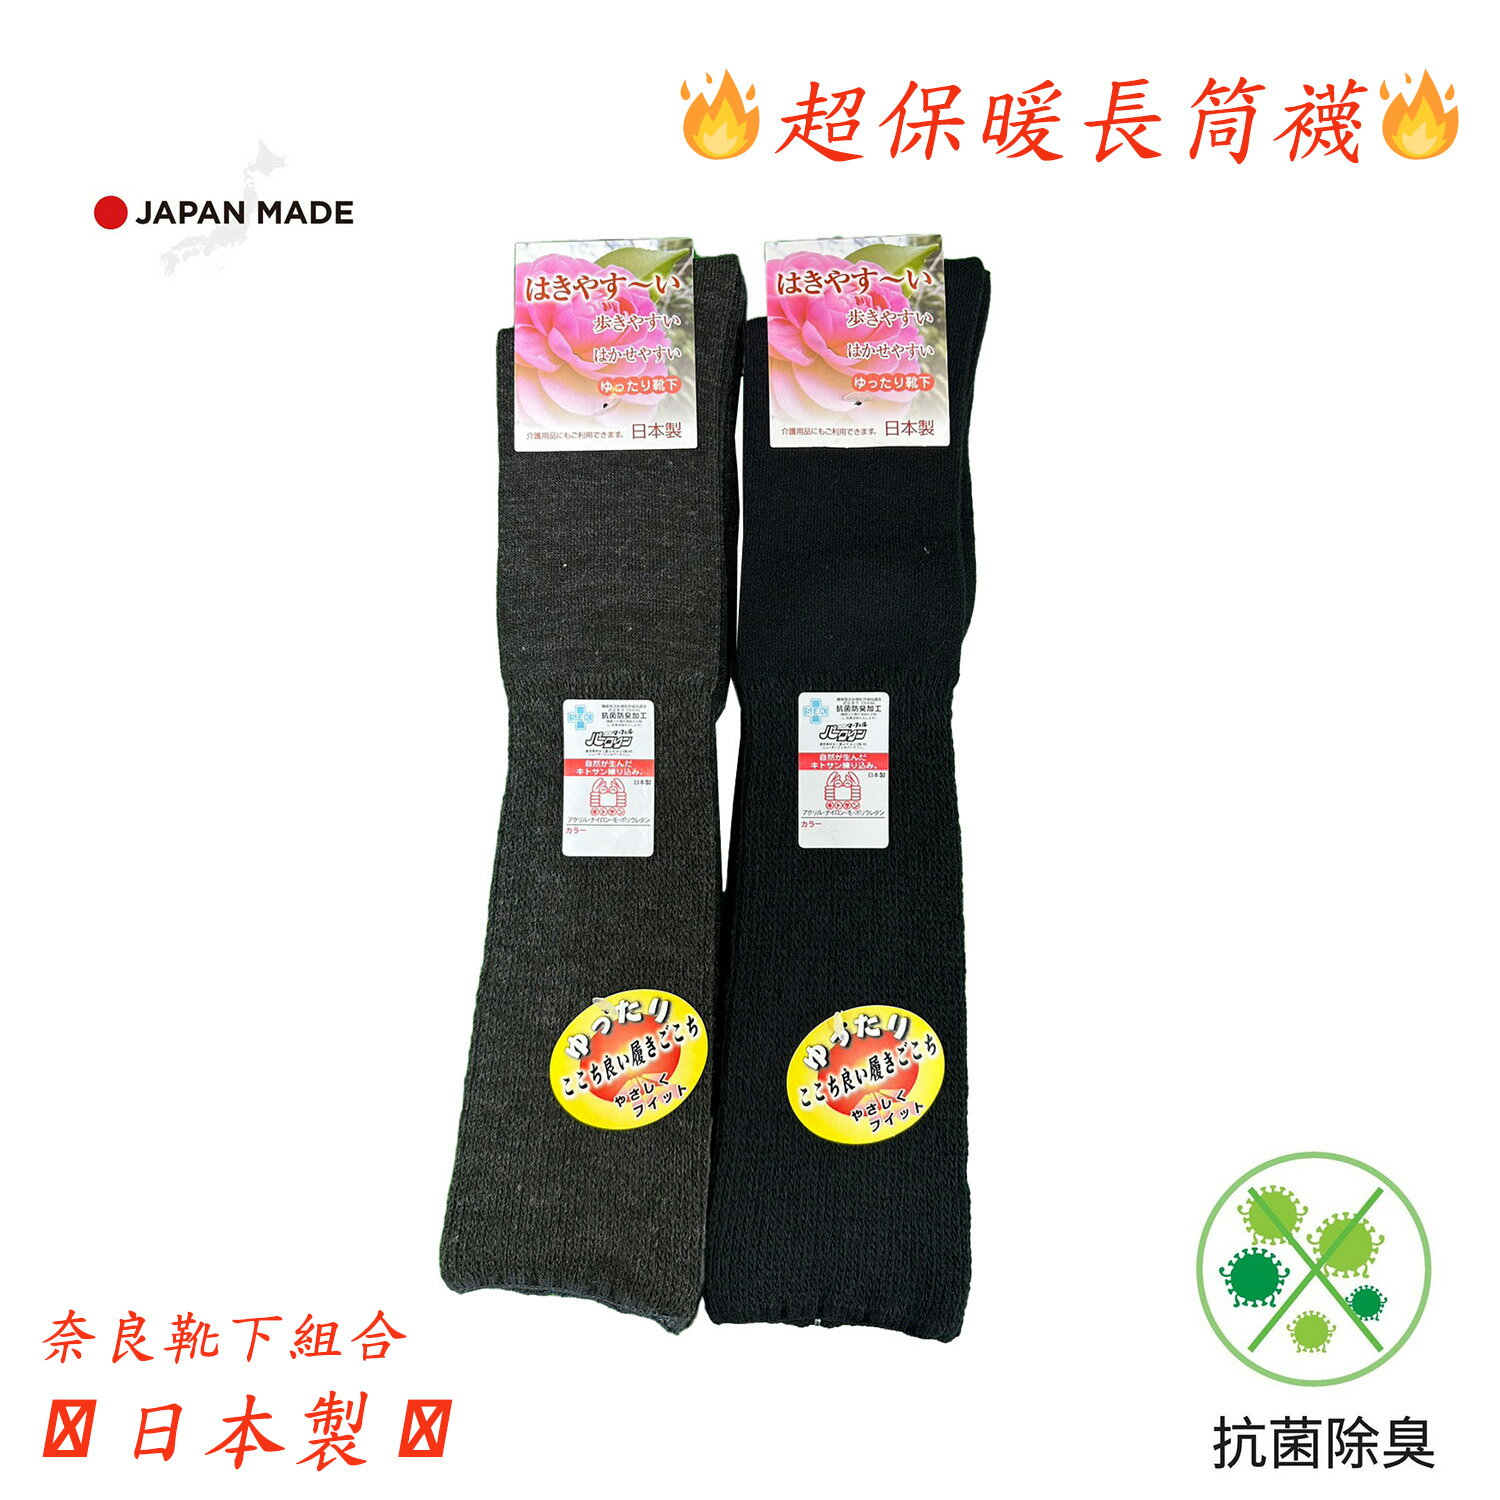 日本製 奈良靴下組合 抗菌除臭加工 女士 長筒毛襪 保暖襪(2色)